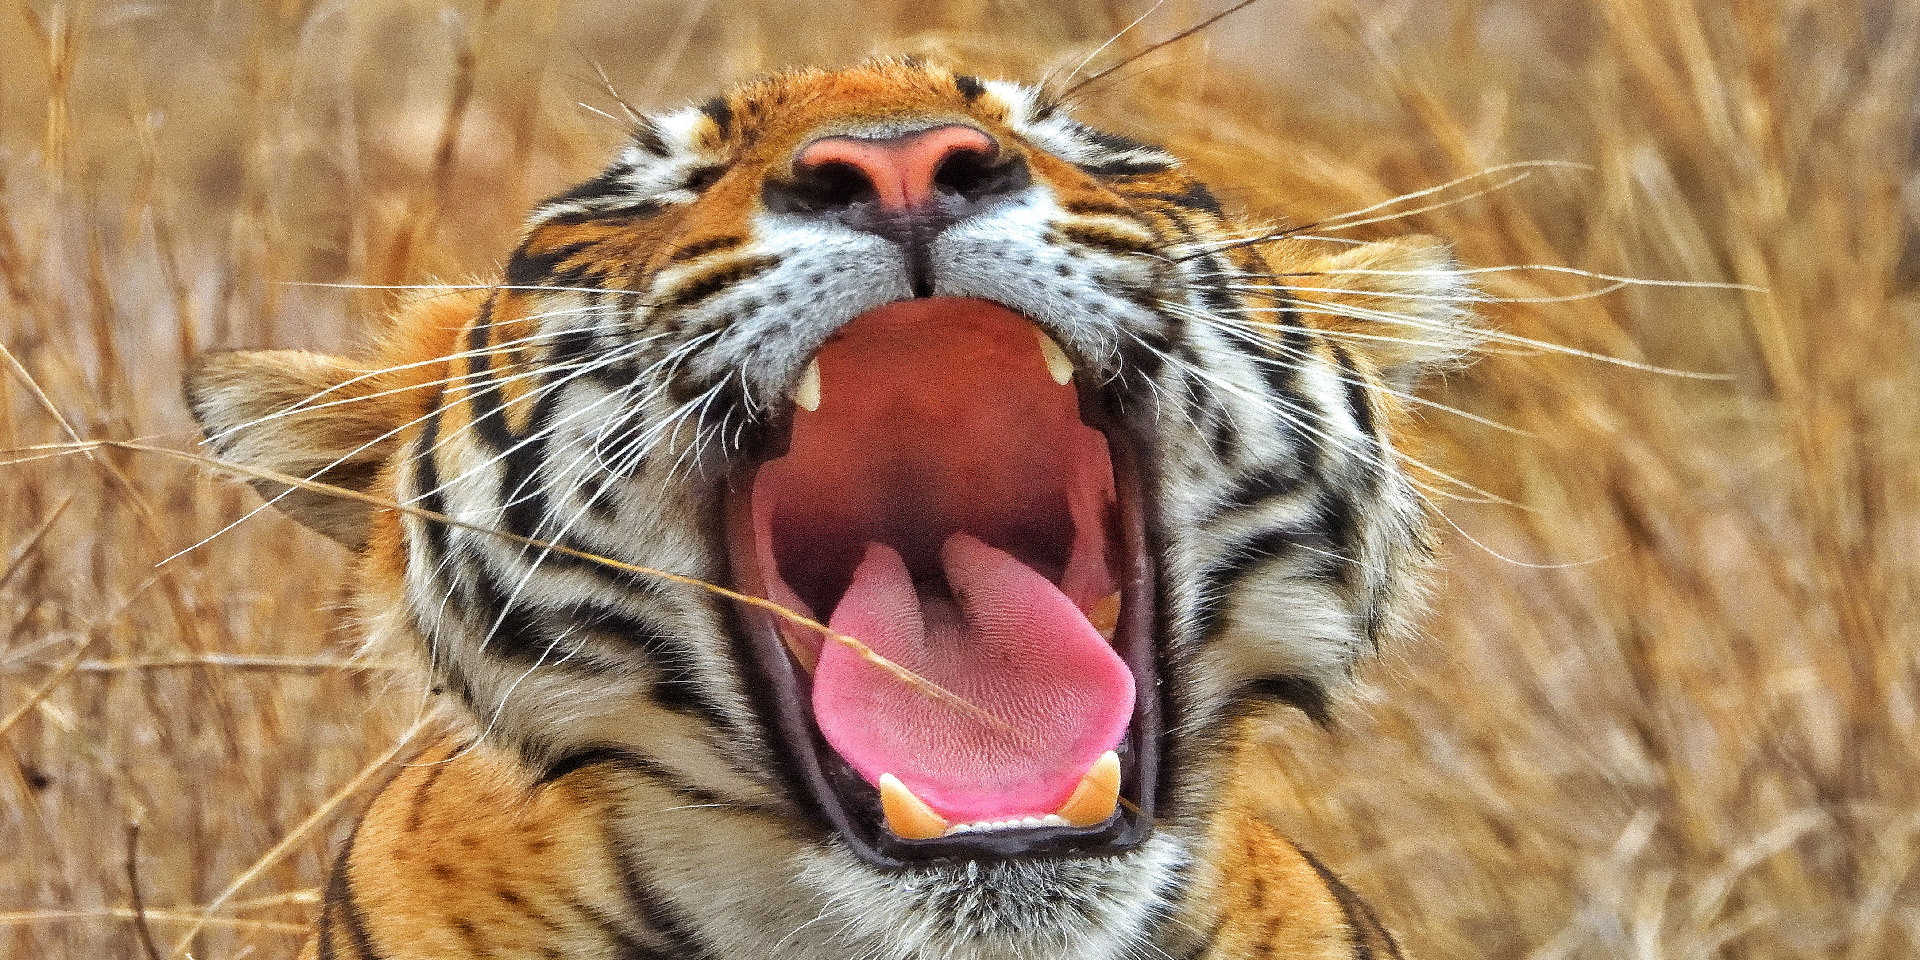 travelwith-ranthamabore-tiger-yawning